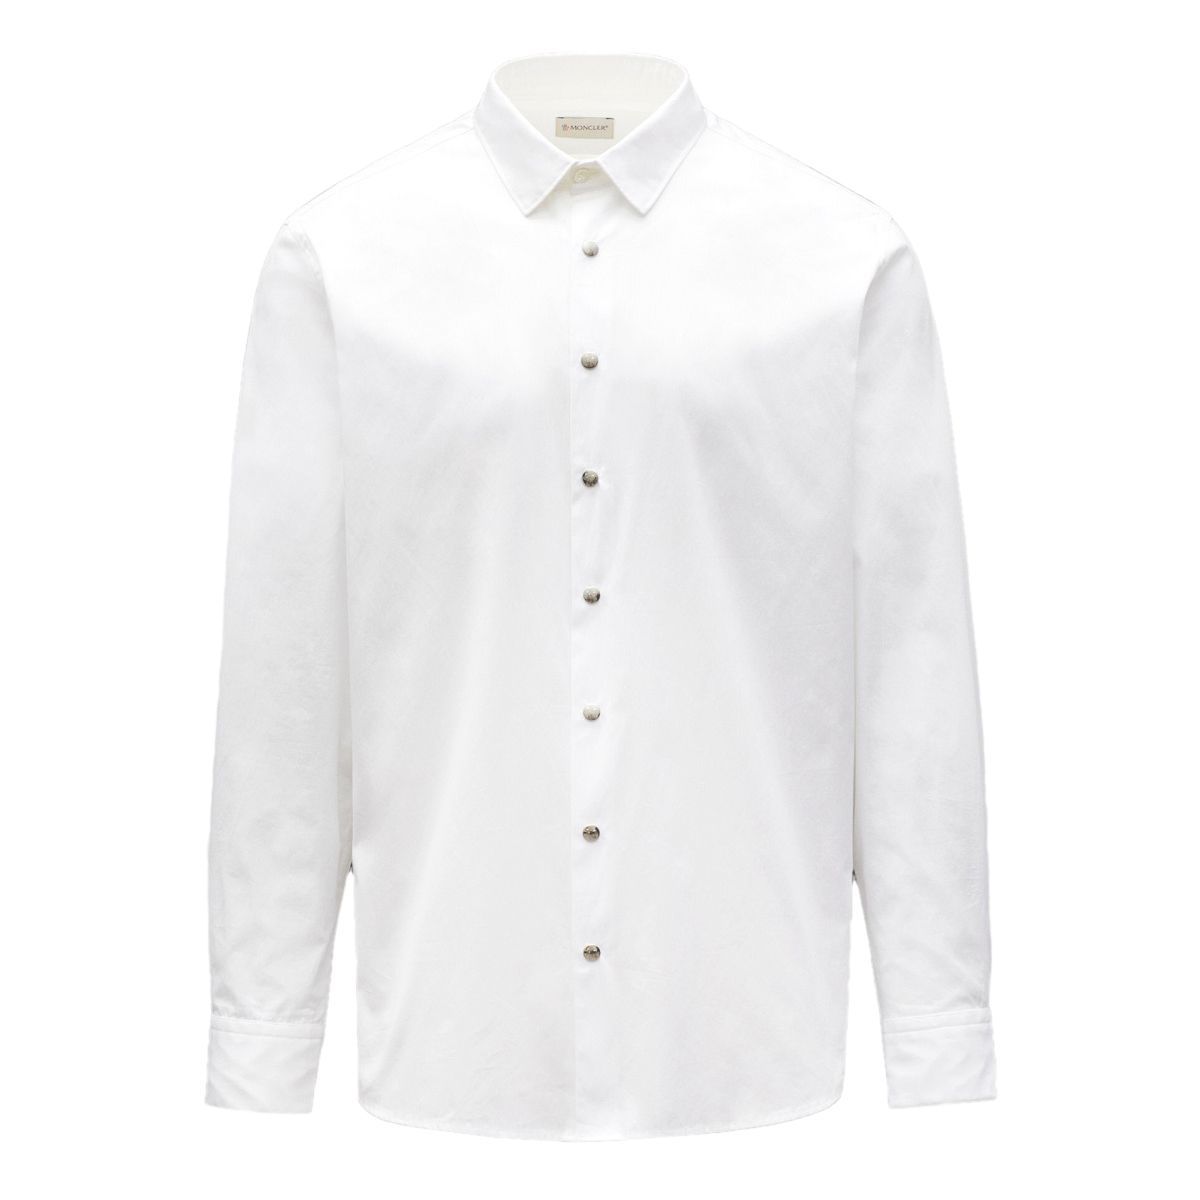 3 MONCLER 2F00003 ホワイト 長袖 ドレスシャツ Yシャツ